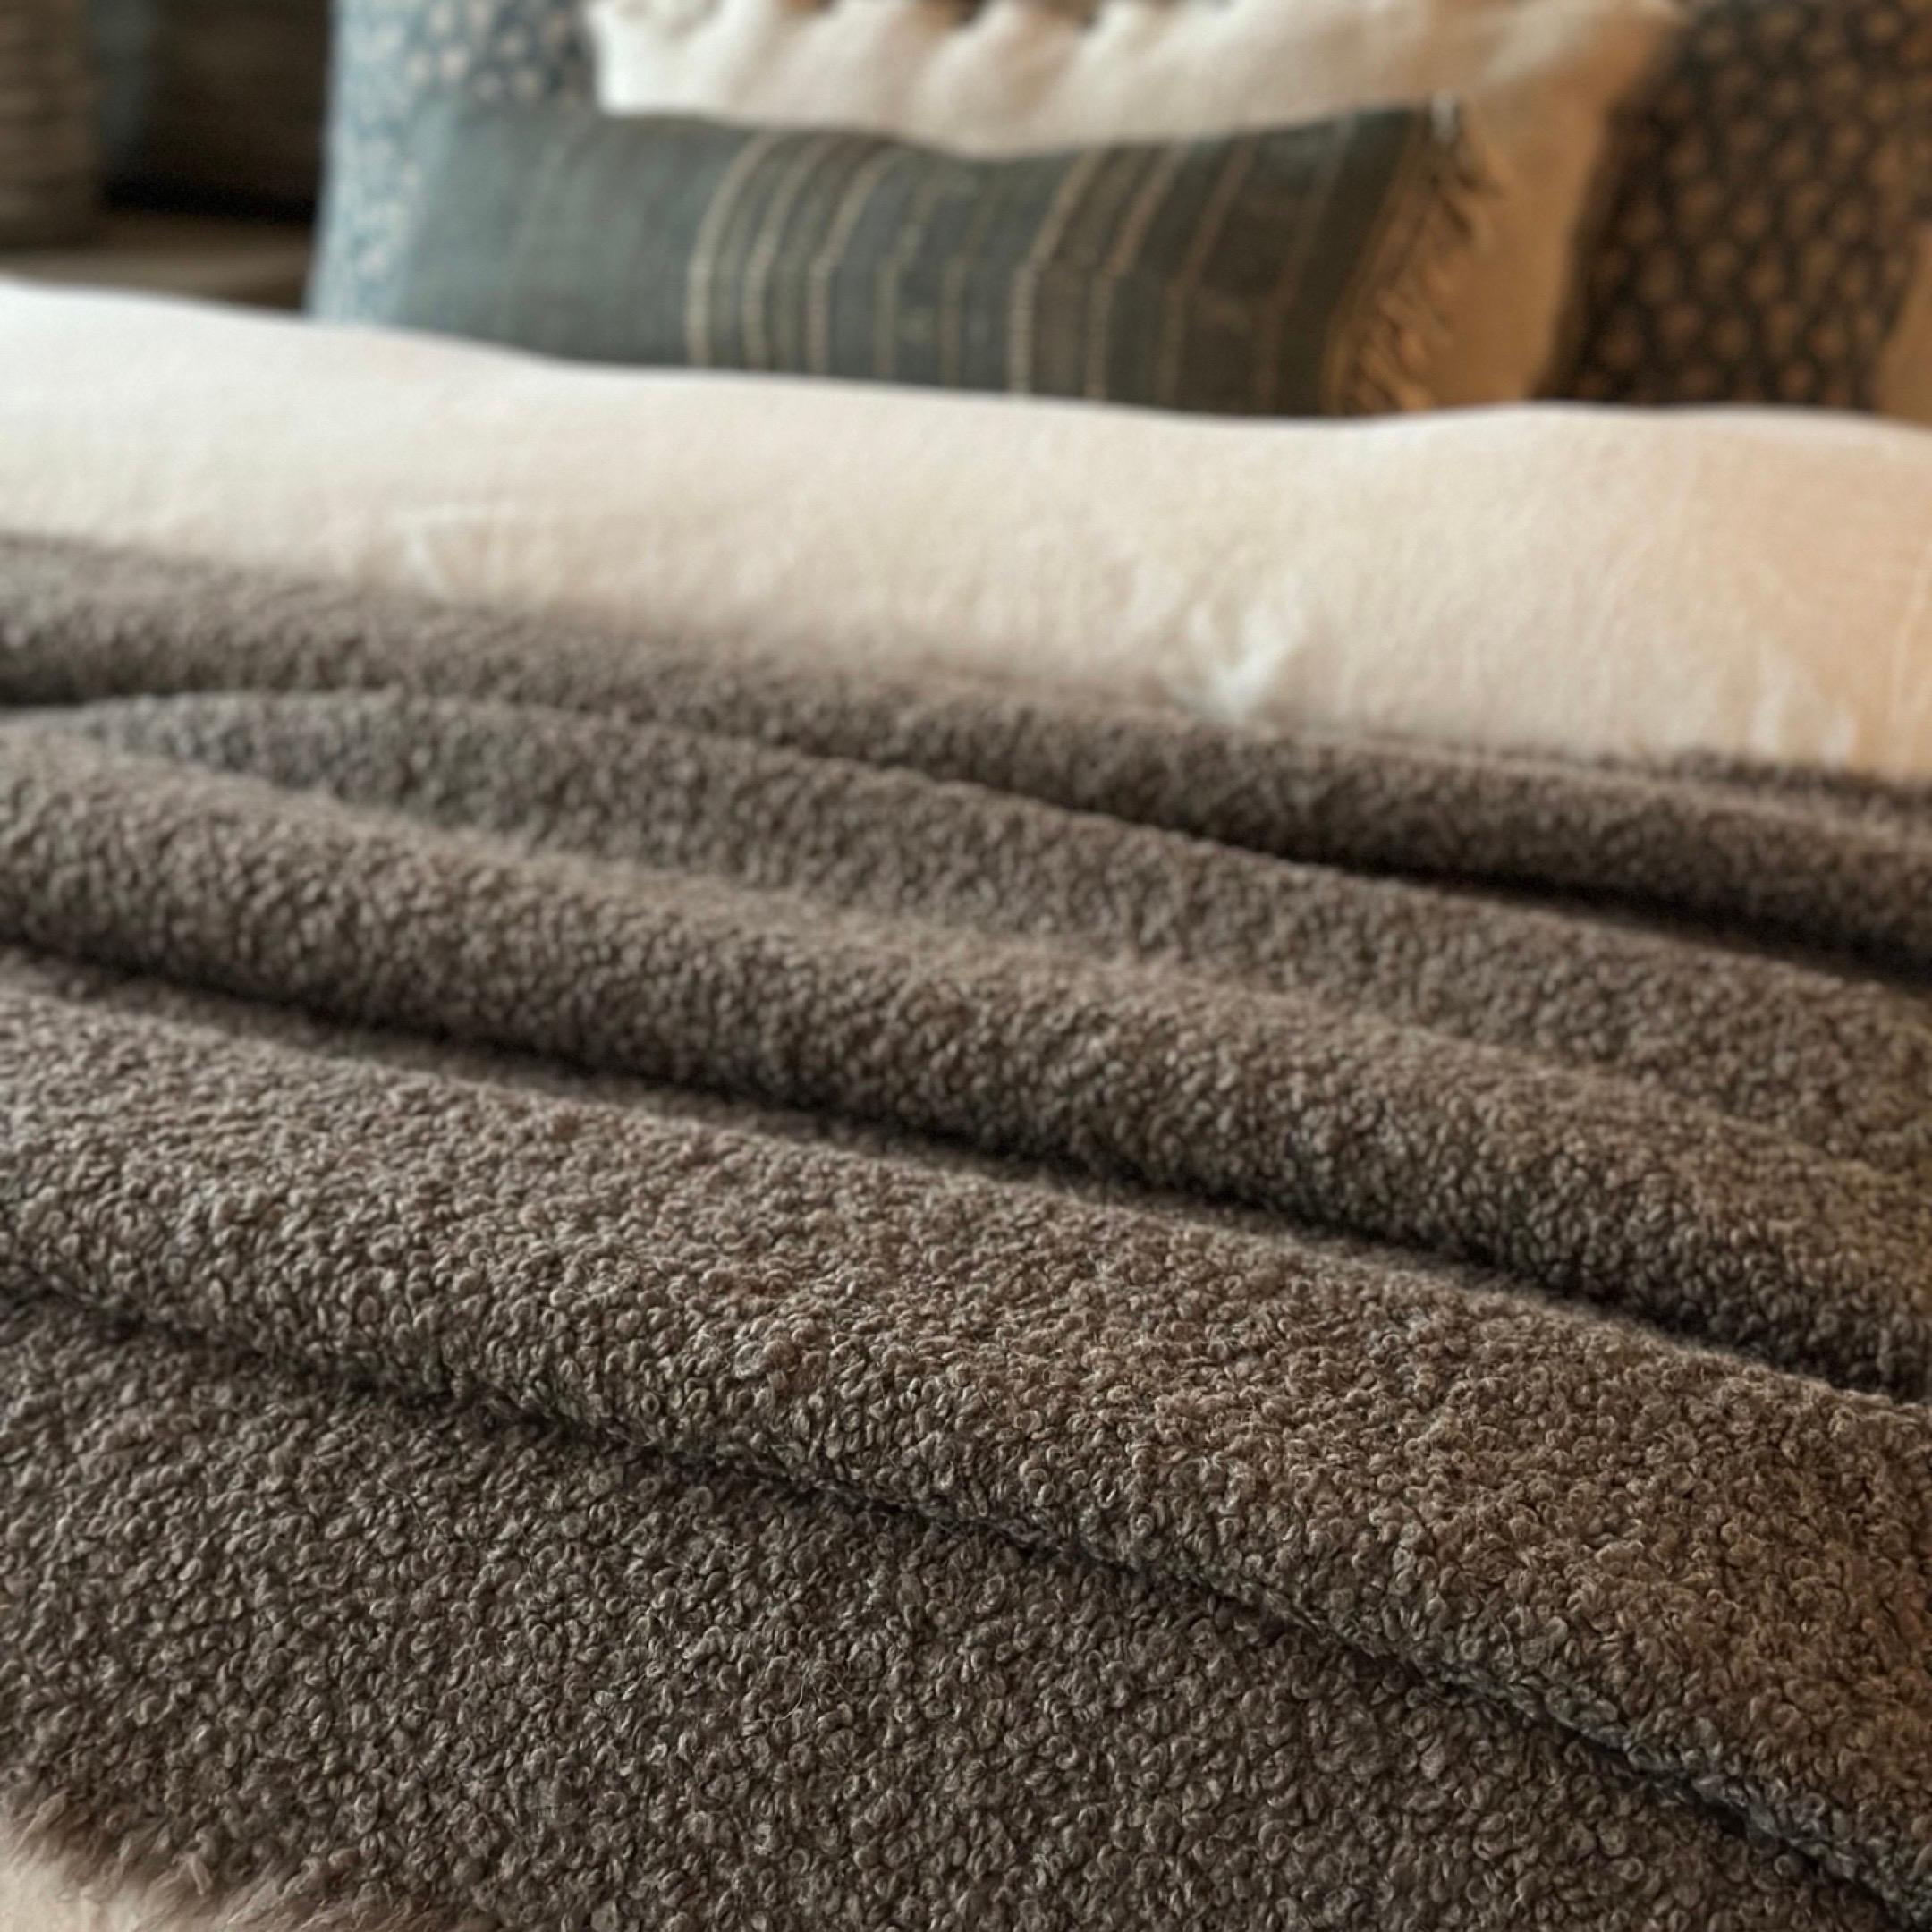 In Belgien mit traditionellen Webtechniken gewebte, schwere Decke aus einem unglaublich voluminösen und luxuriösen Alpaka/Wolle-Boucle. Diese Decke ist der Inbegriff von Wärme und Komfort.

MATERIAL: Baumwolle 11% , Alpaka-Wolle 45%, Wolle